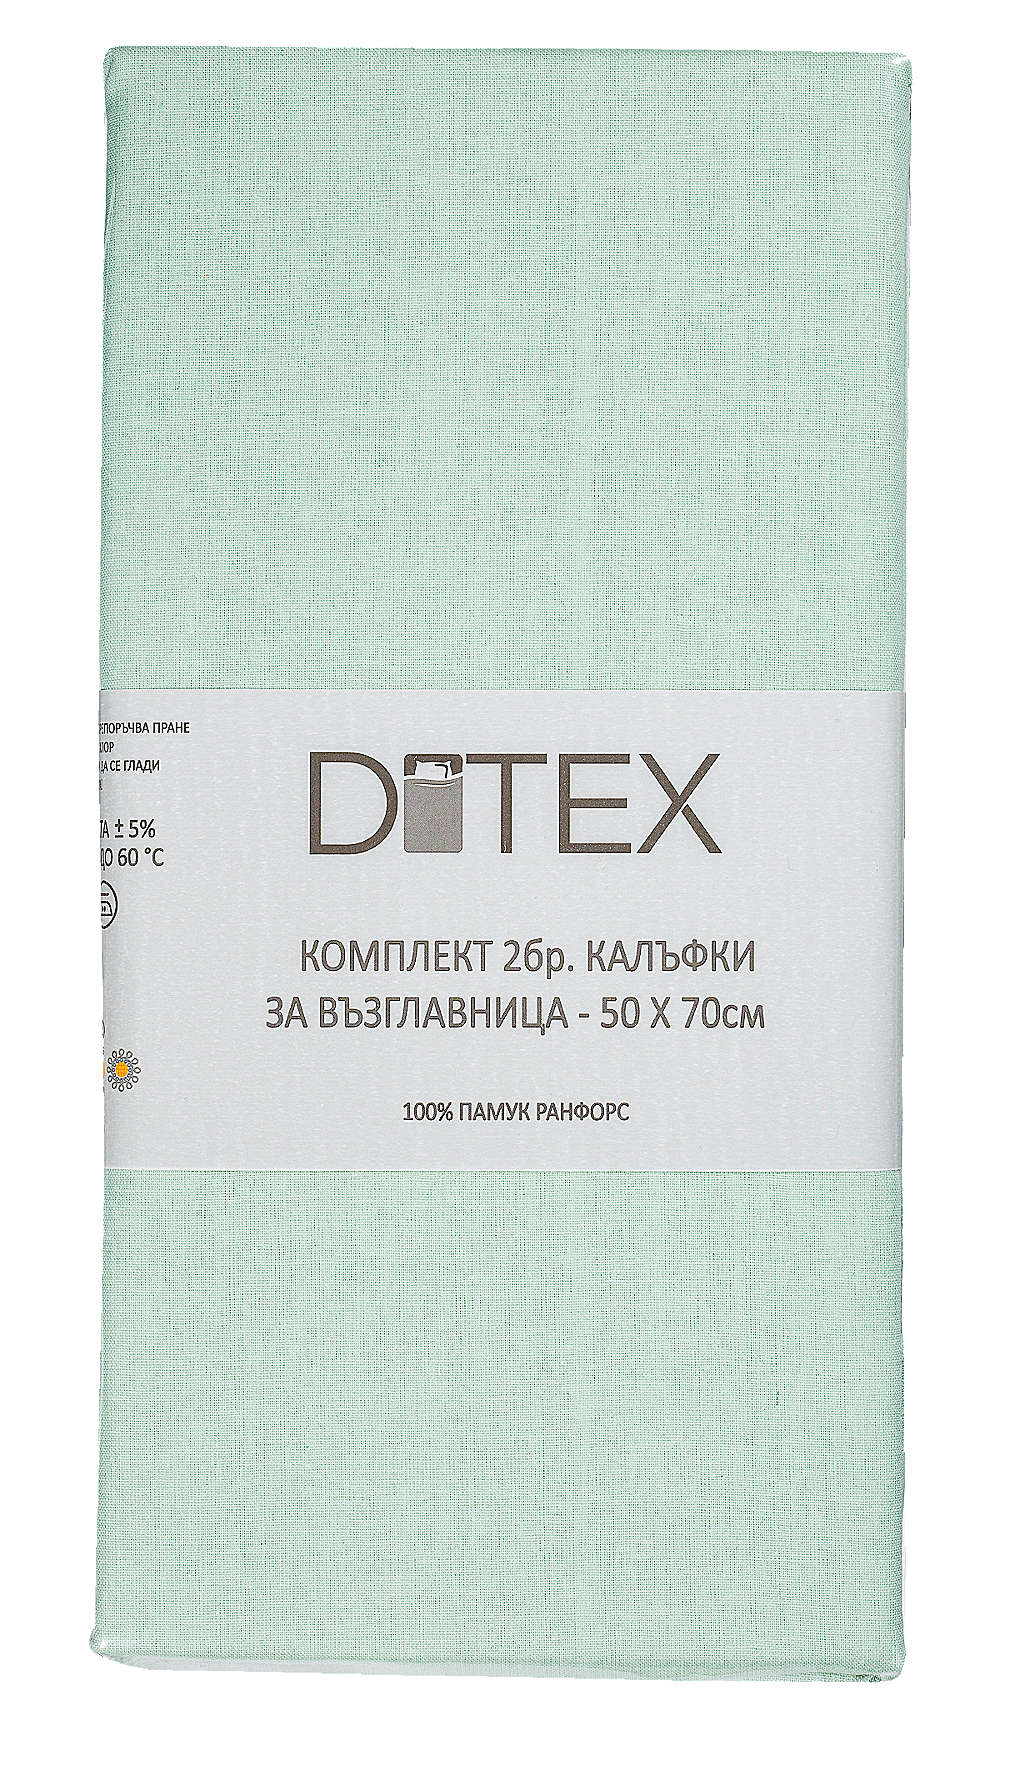 Изображение за продукта Ditex Калъфки за възглавница 50 х 70 см